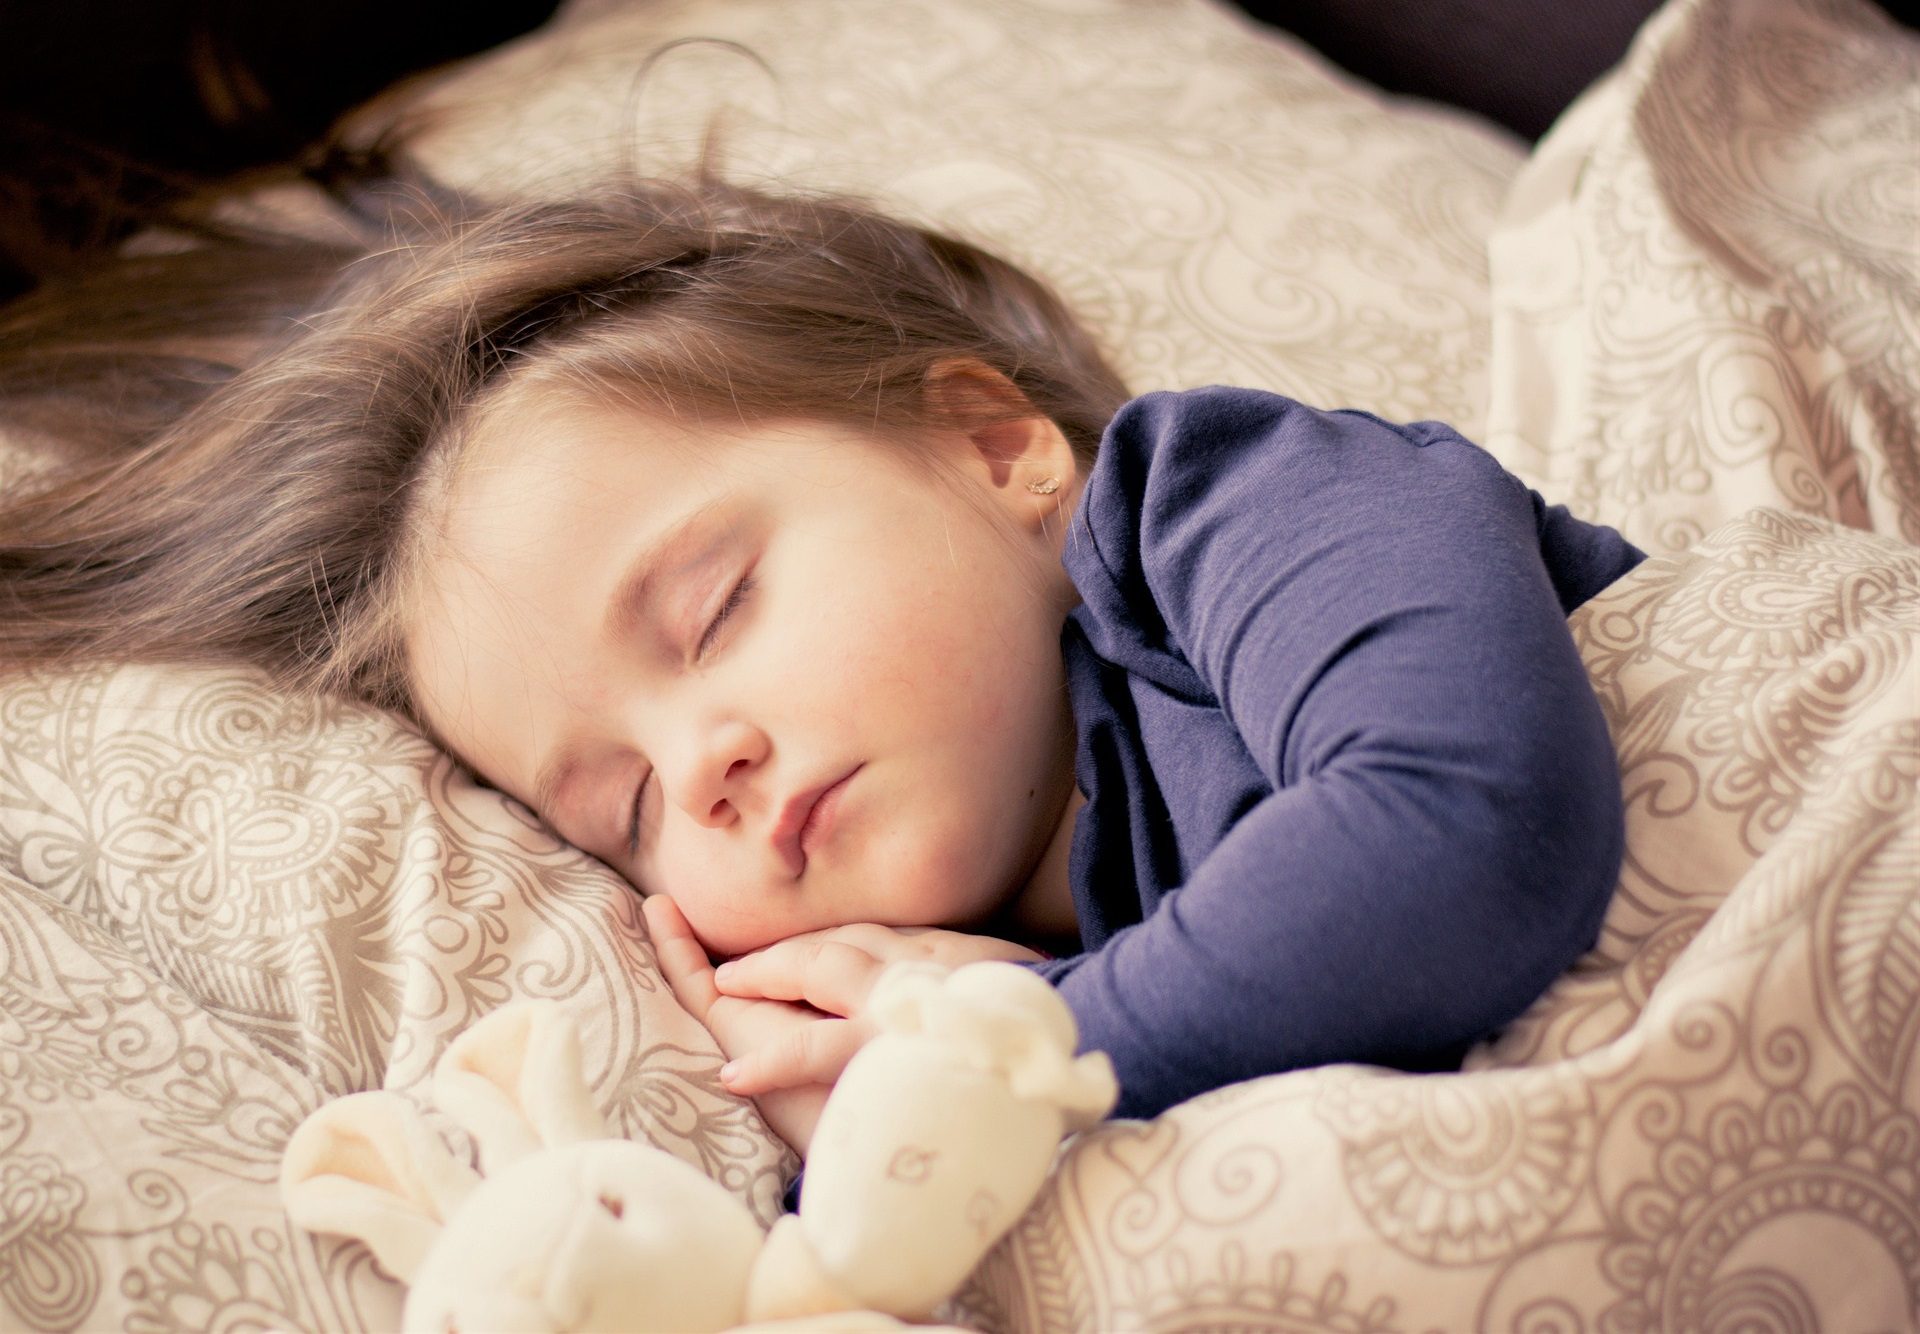 koliko-je-sna-potrebno-djeci?-dok-nekoliko-sati-nespavanja-moze-biti-beznacajan-gubitak,-dugorocno-to-moze-biti-veoma-opasno